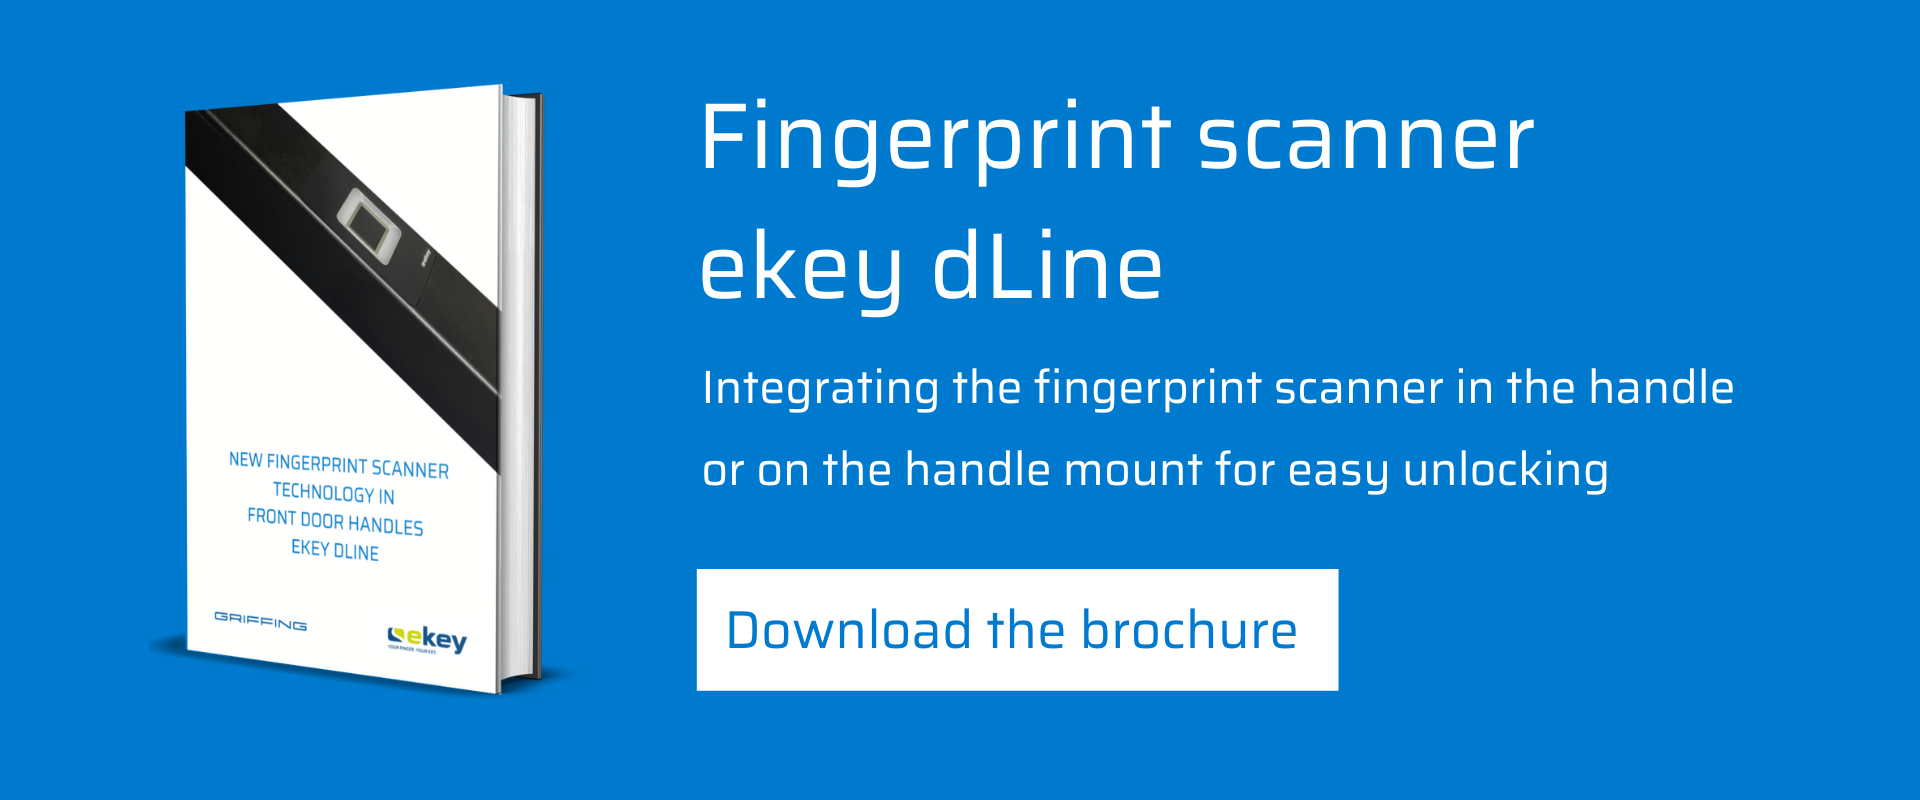 Fingerprint scanner ekey dLine integrated in door handle-Griffing